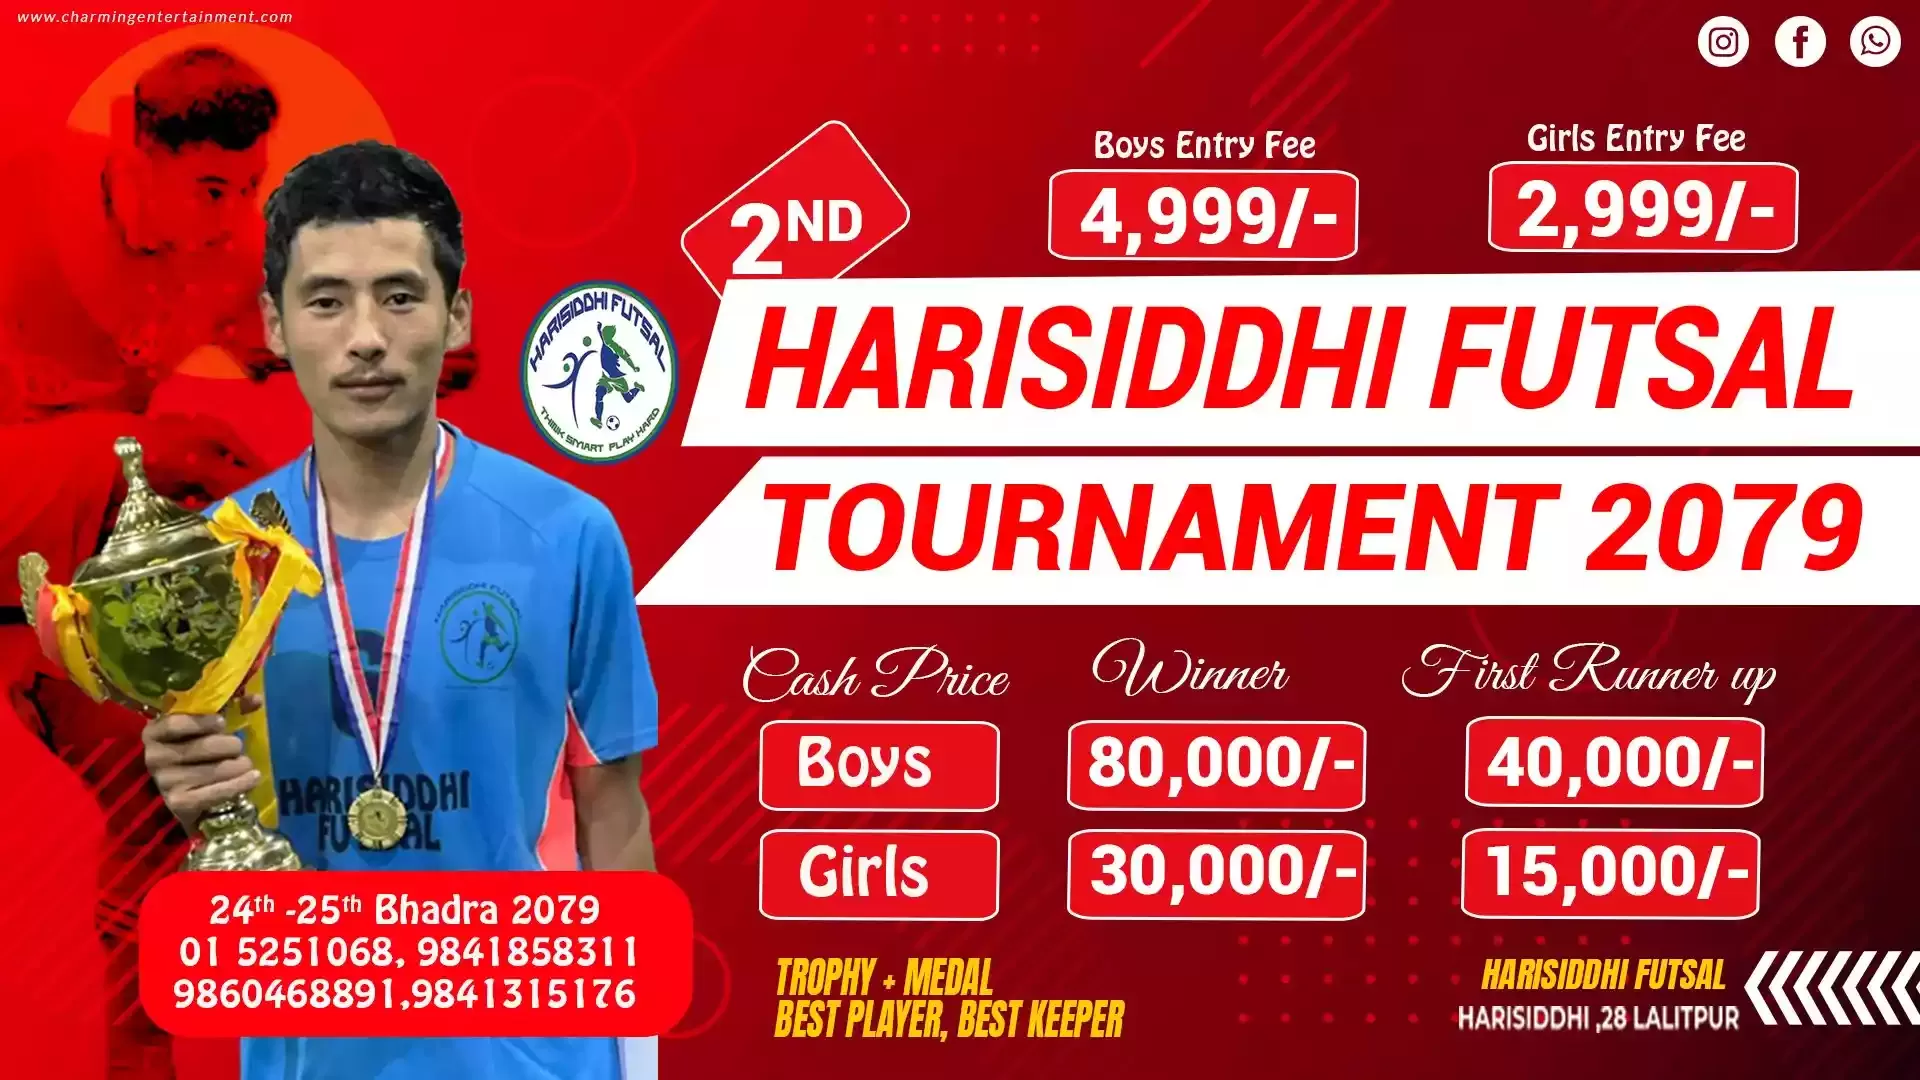 2nd Open Harisiddhi Futsal Tournament